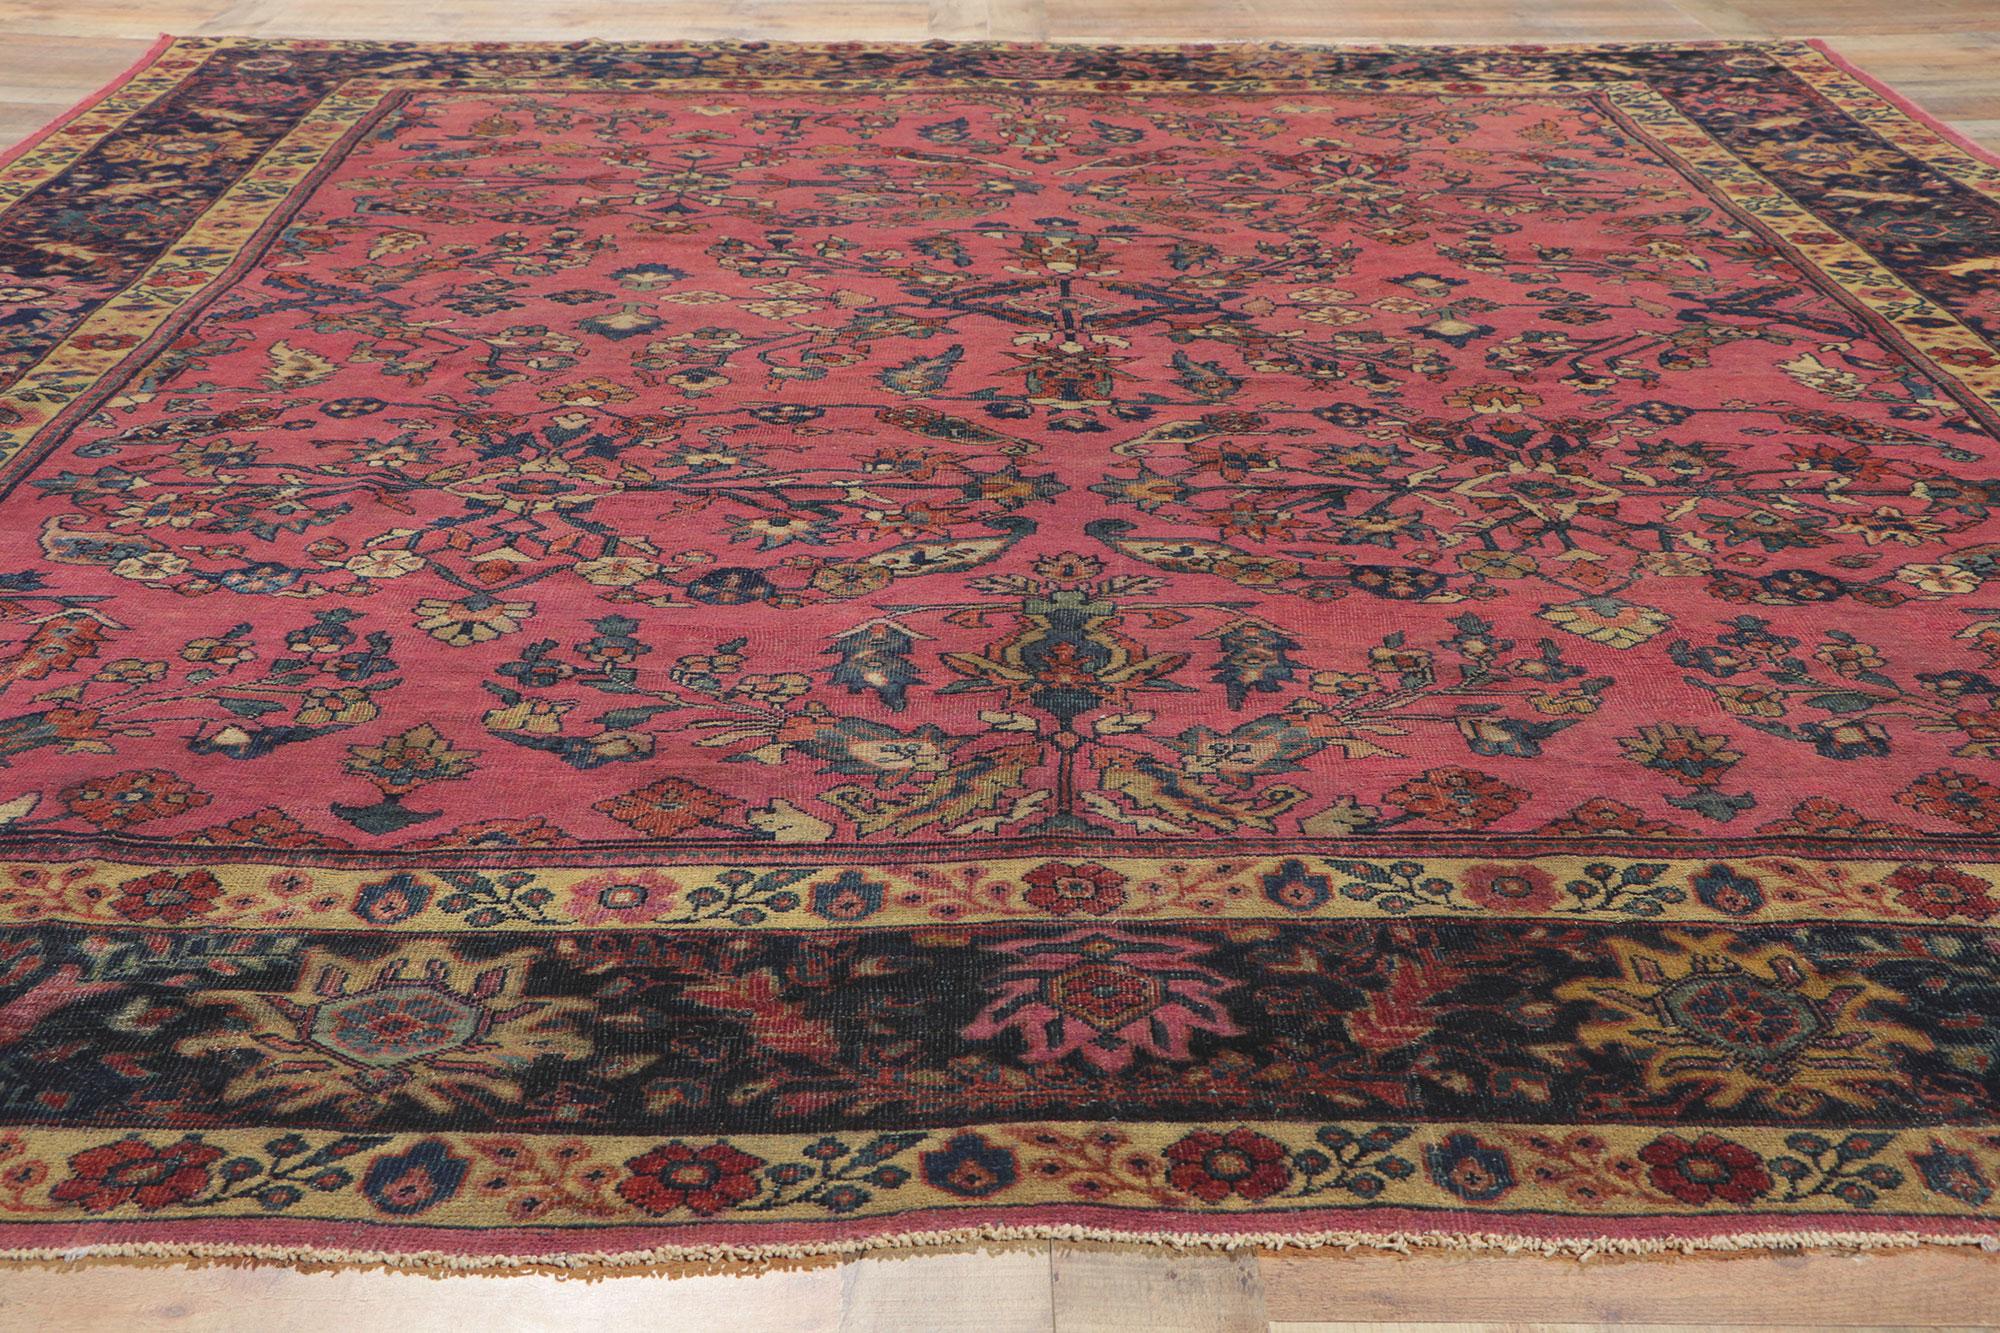 Wool Antique Dark Pink Persian Mahal Carpet For Sale